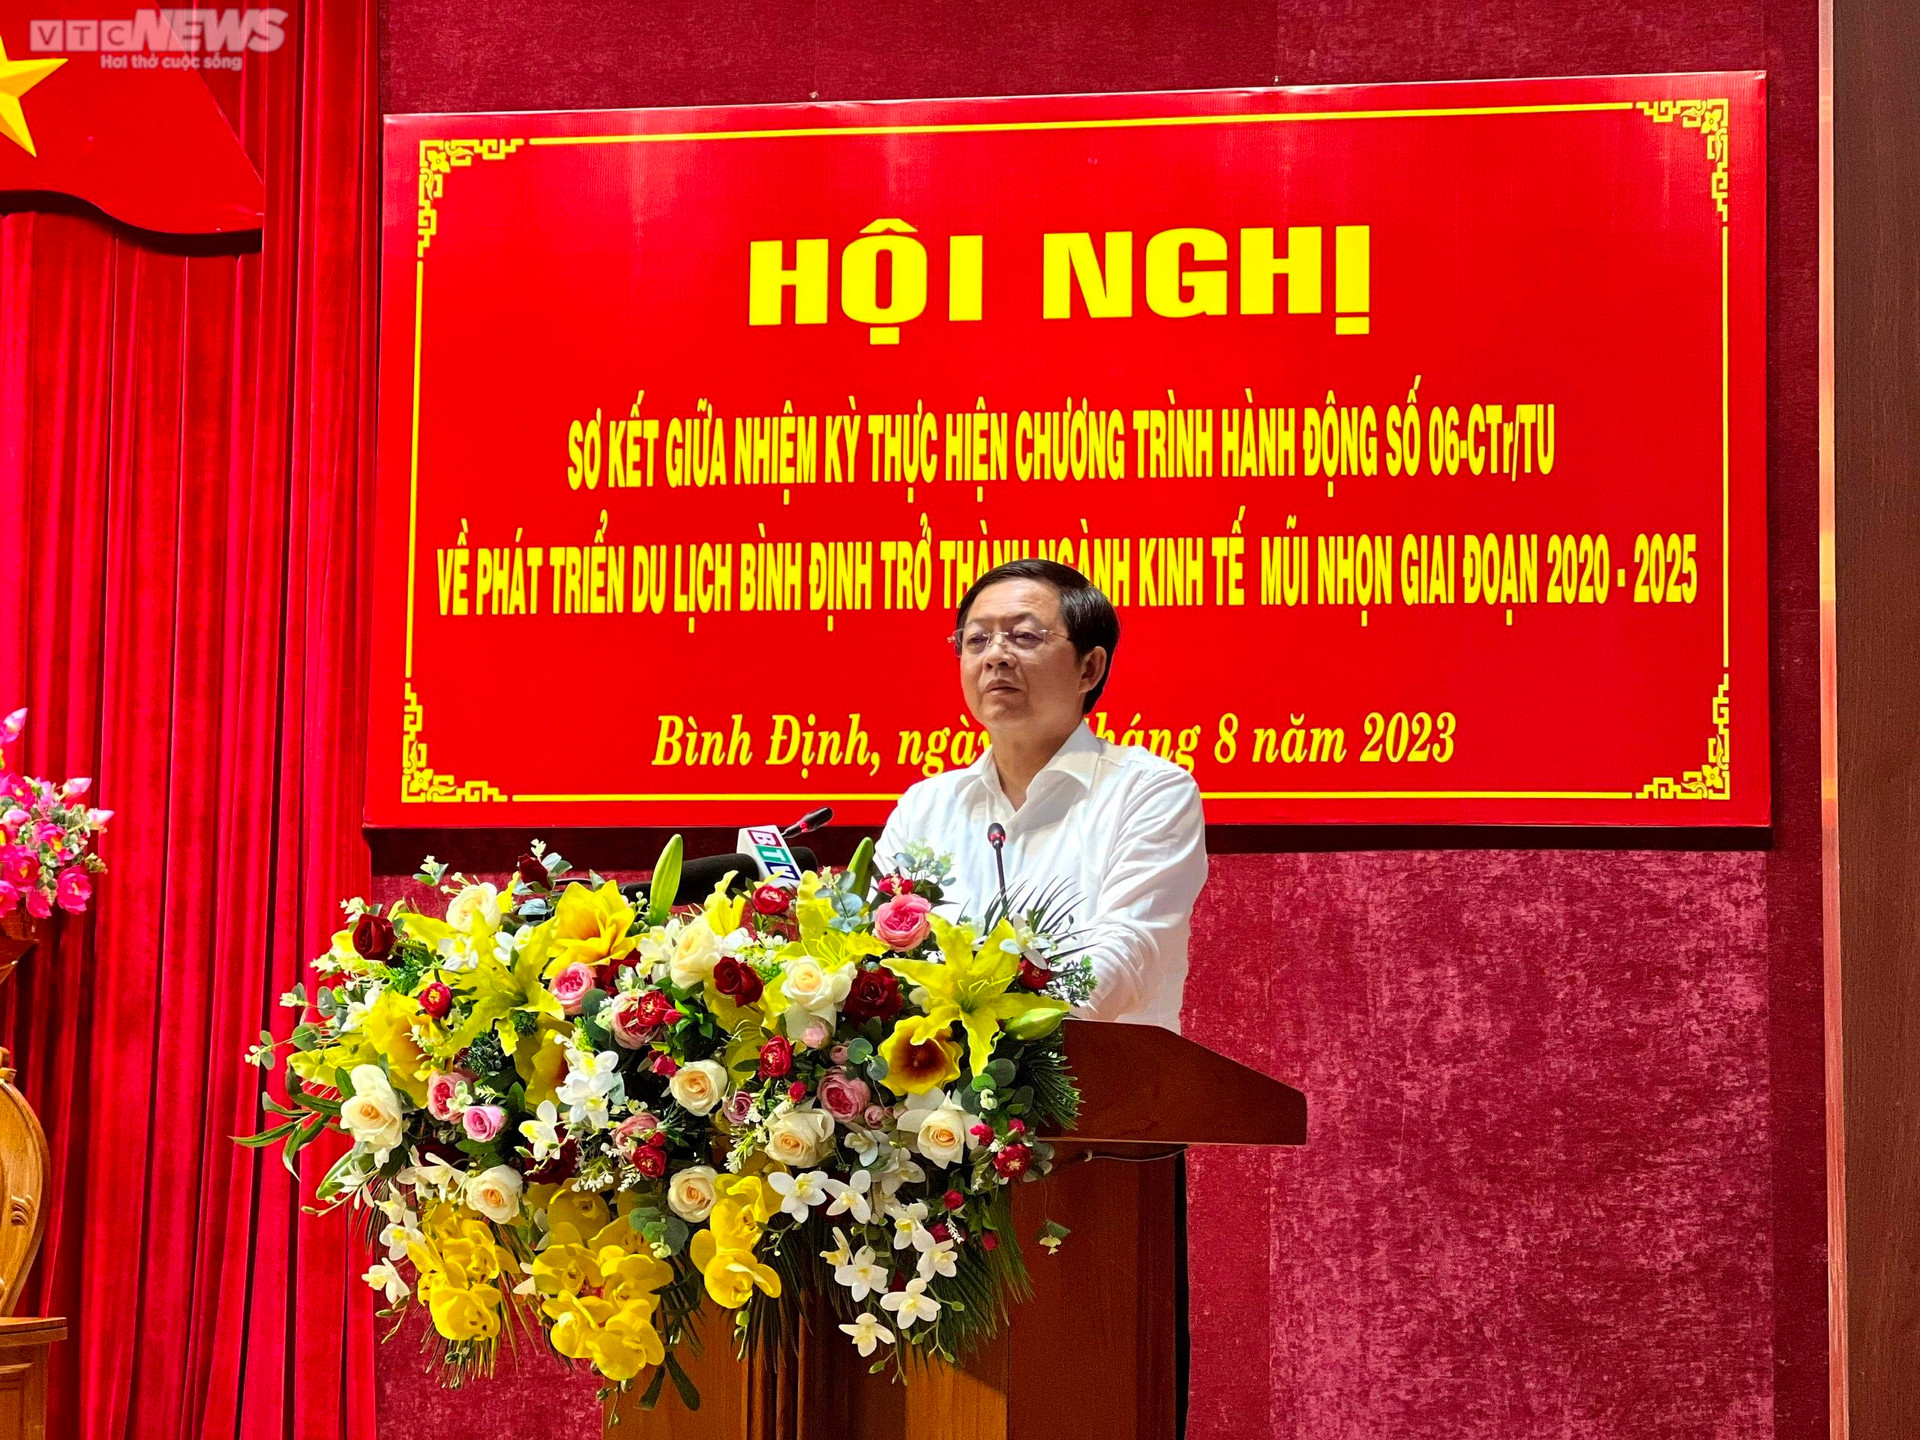 Ông Hồ Quốc Dũng, Bí thư Tỉnh ủy Bình Định, Trưởng Ban chỉ đạo chương trình hành động về phát triển du lịch Bình Định phát biểu lại hội nghị.